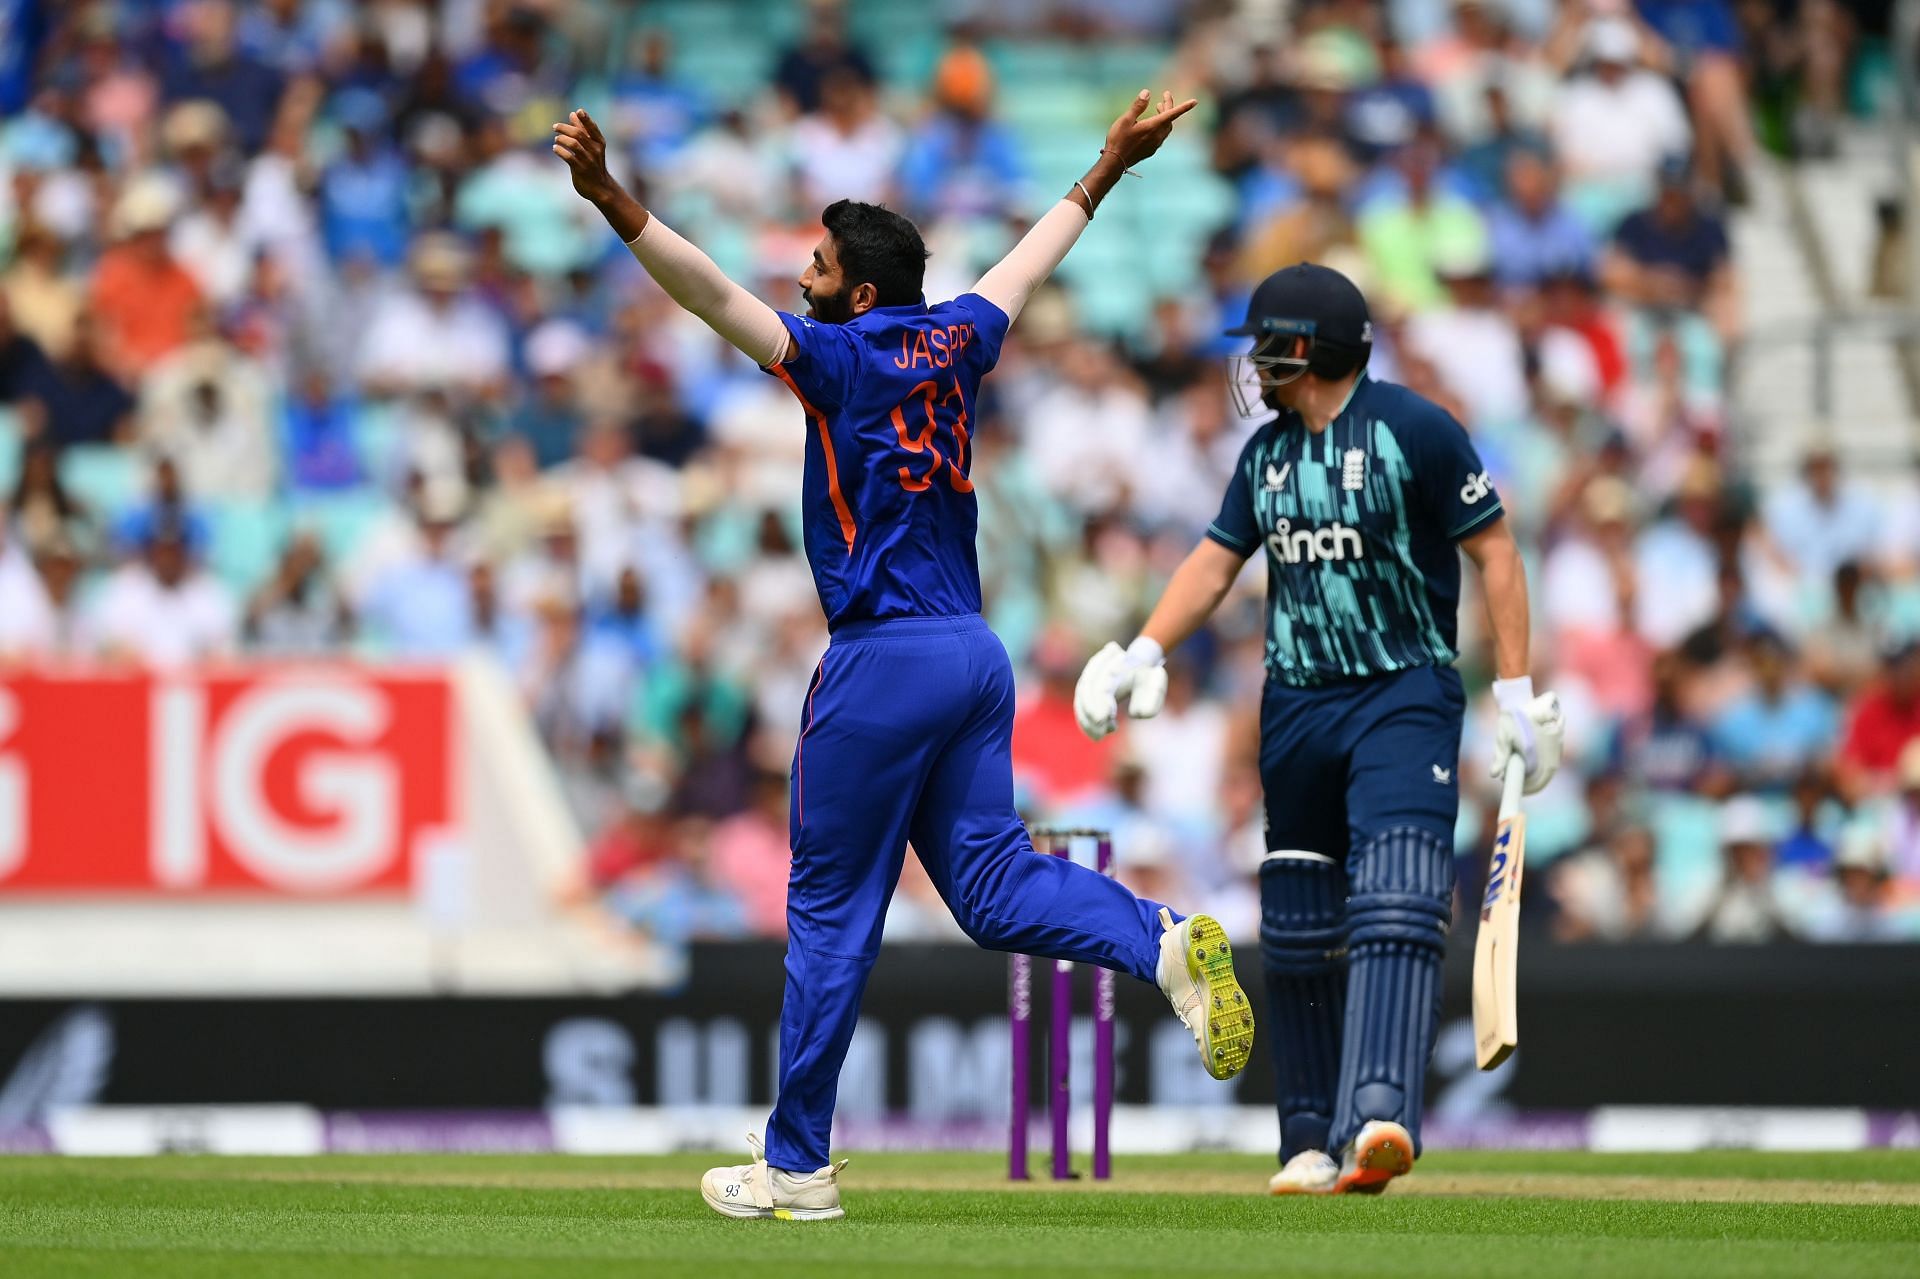 Jasprit Bumrah registered his best figures in ODI cricket